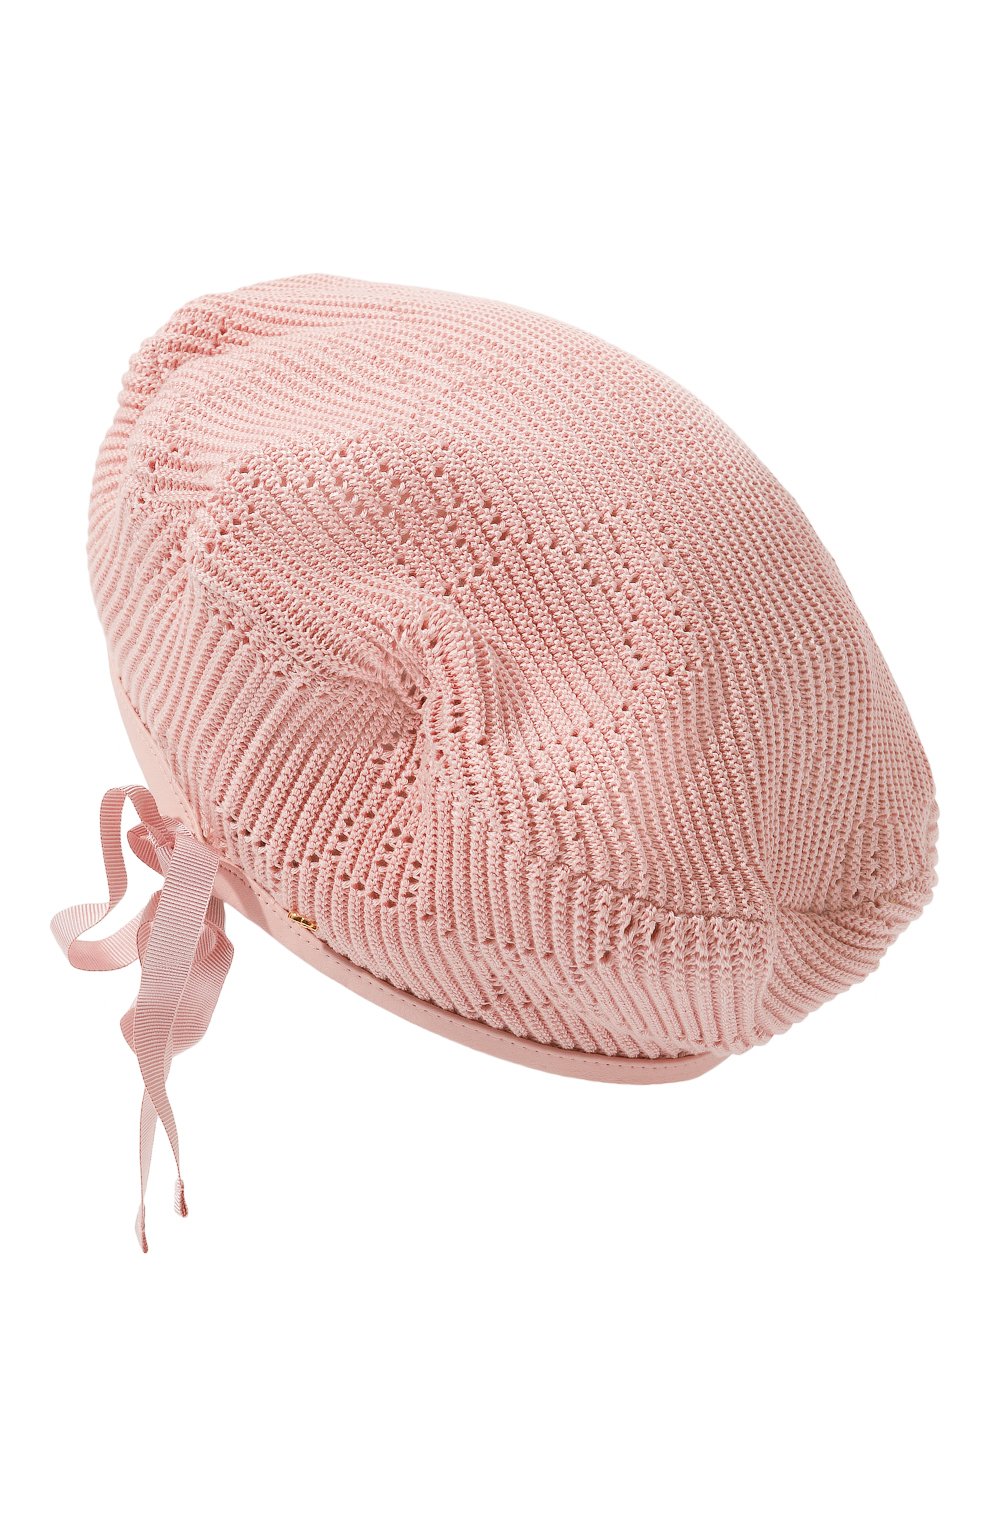 Женский хлопковый берет GUCCI розового цвета, арт. 656574 3HAC5 | Фото 1 (Материал: Текстиль, Хлопок)